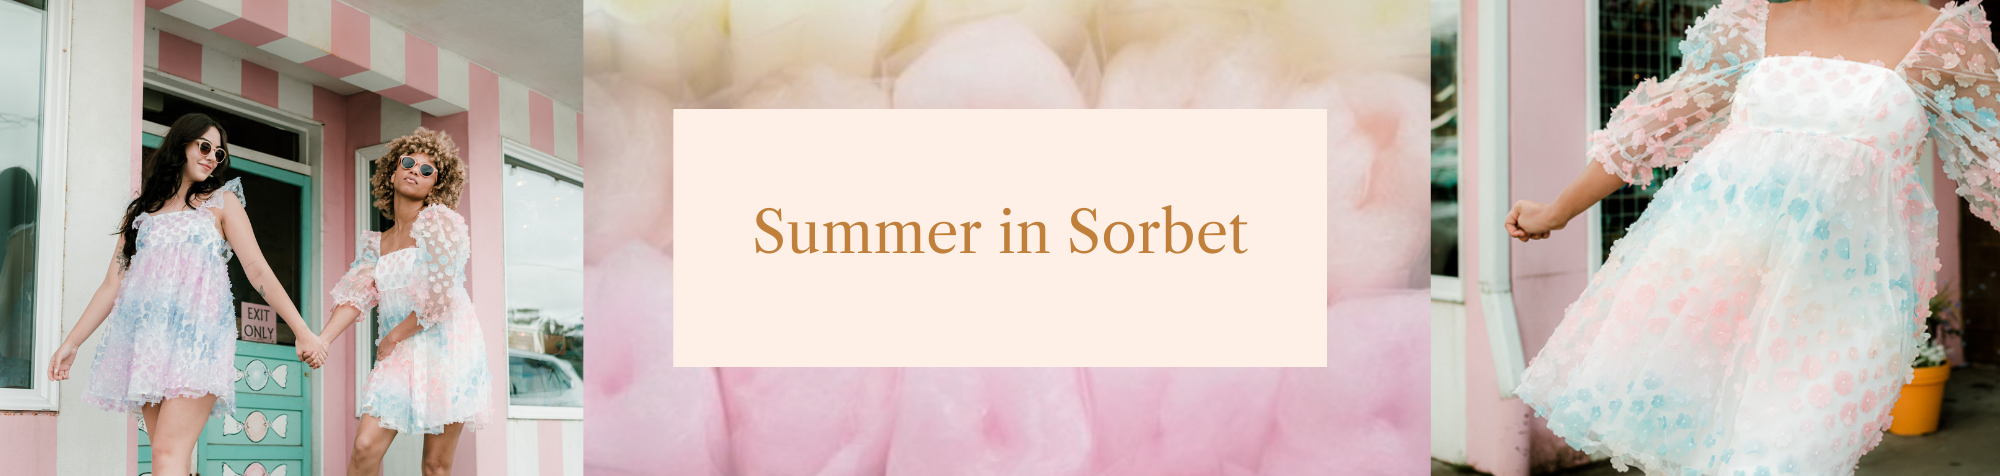 Summer in Sorbet